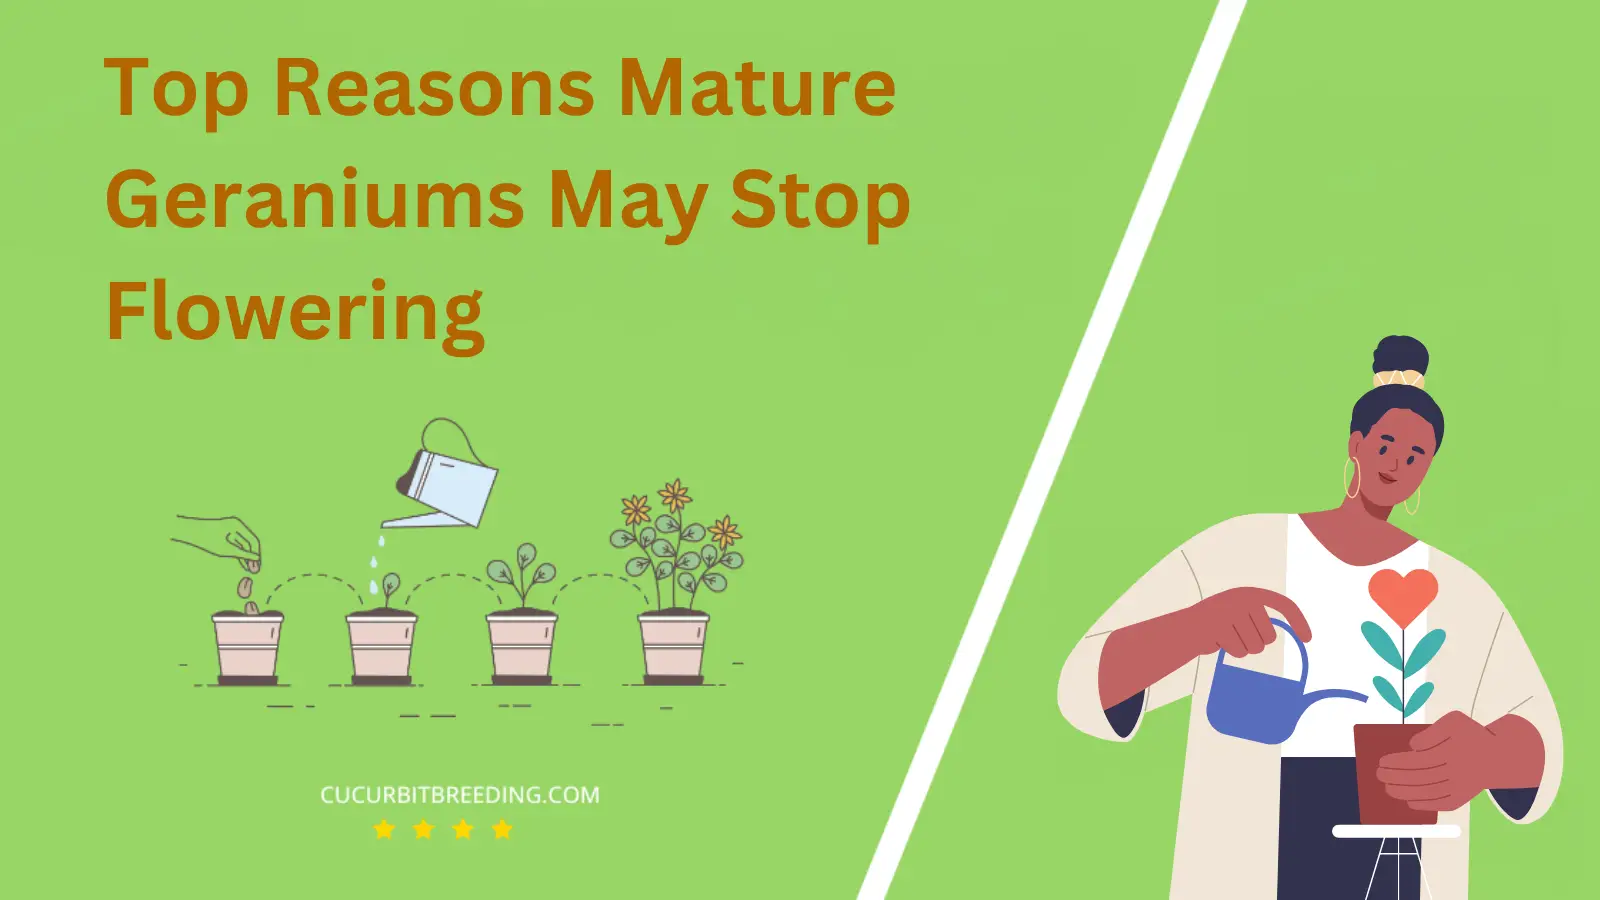 Top Reasons Mature Geraniums May Stop Flowering